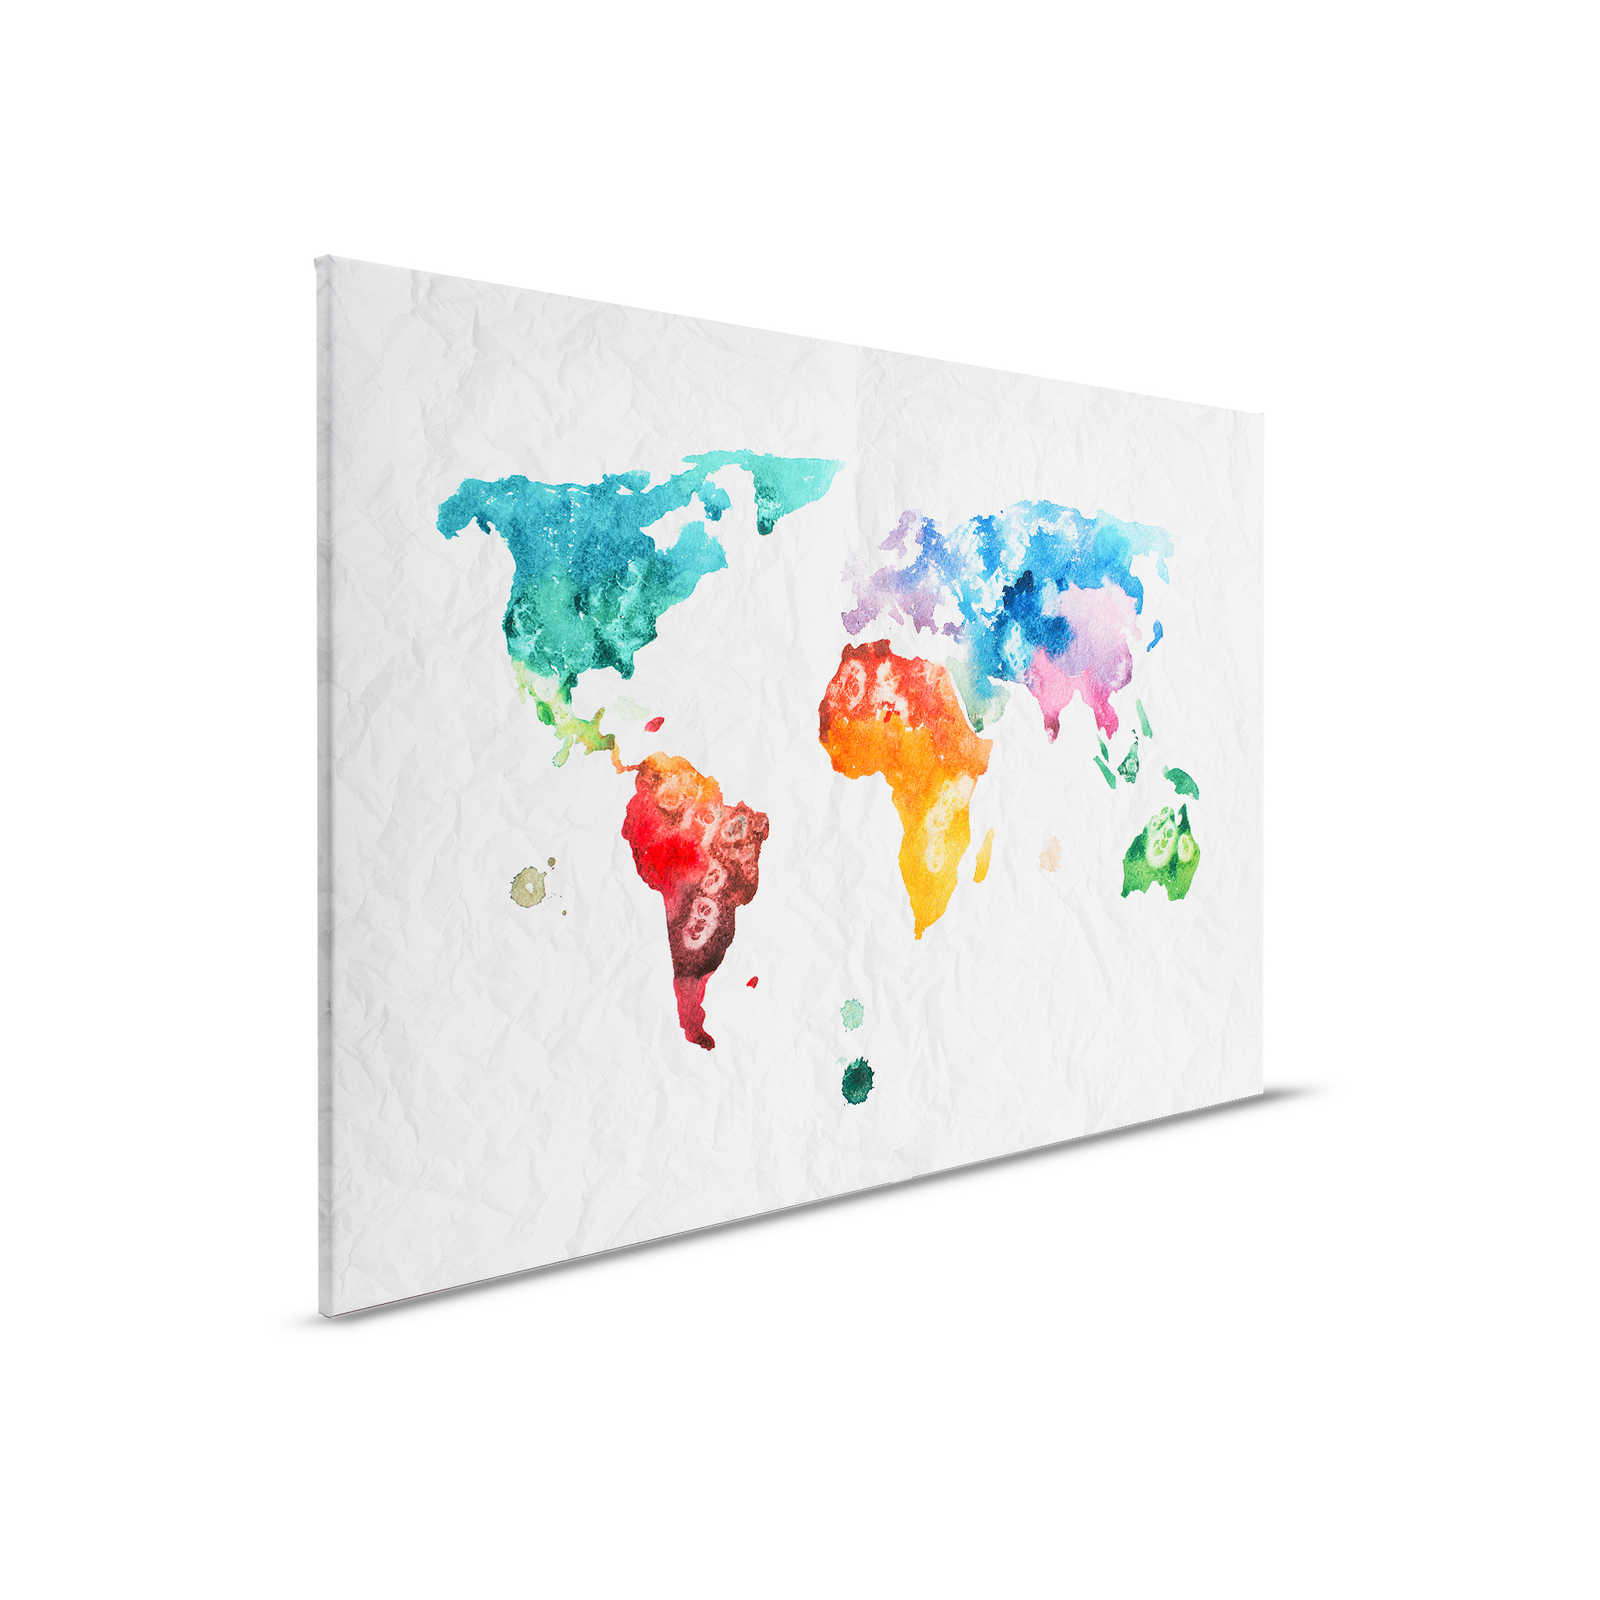 Carte du monde toile aquarelle - 0,90 m x 0,60 m
